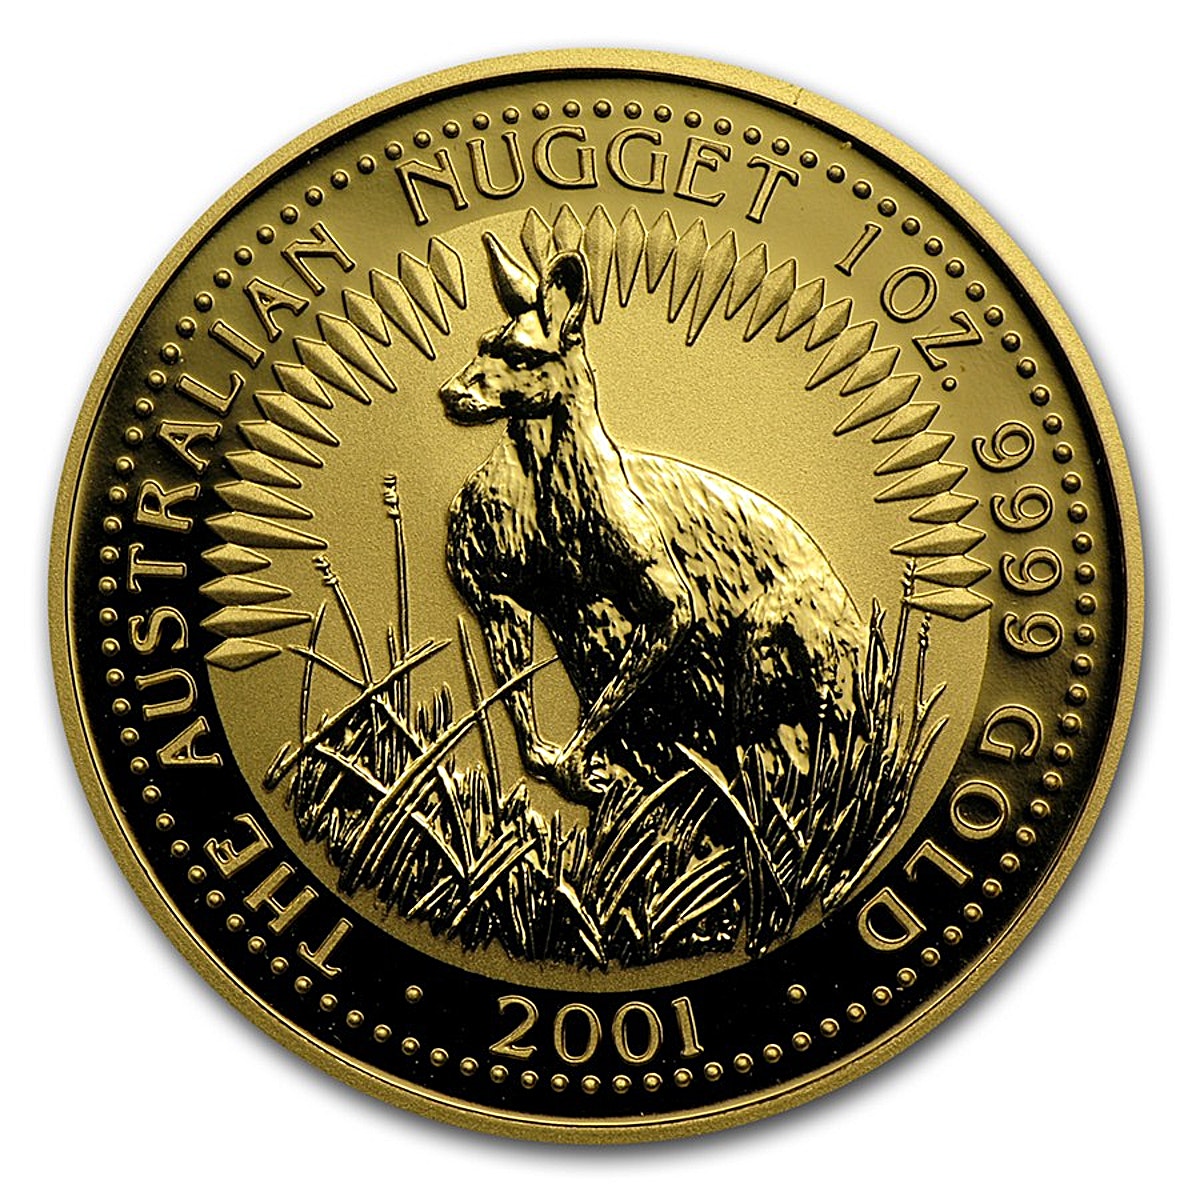 【プレミア商品】 【品質保証書付】 アンティークコイン NGC PCGS 2011 Australia 1 oz Gold Kangaroo